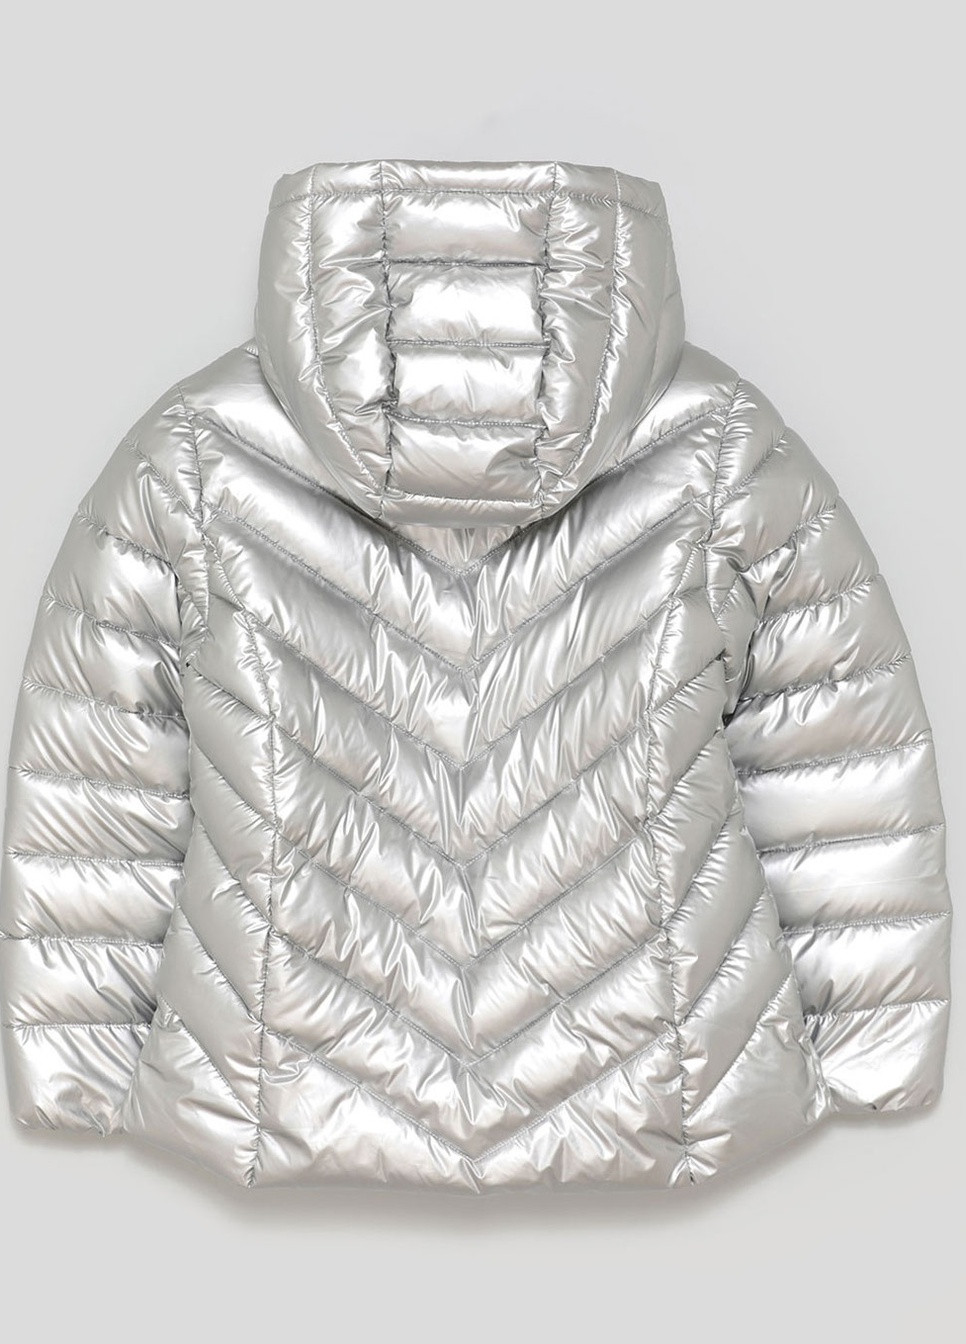 Серебряная демисезонная демисезонная куртка для девочки 116 размер серебристая 5811108808 Lefties